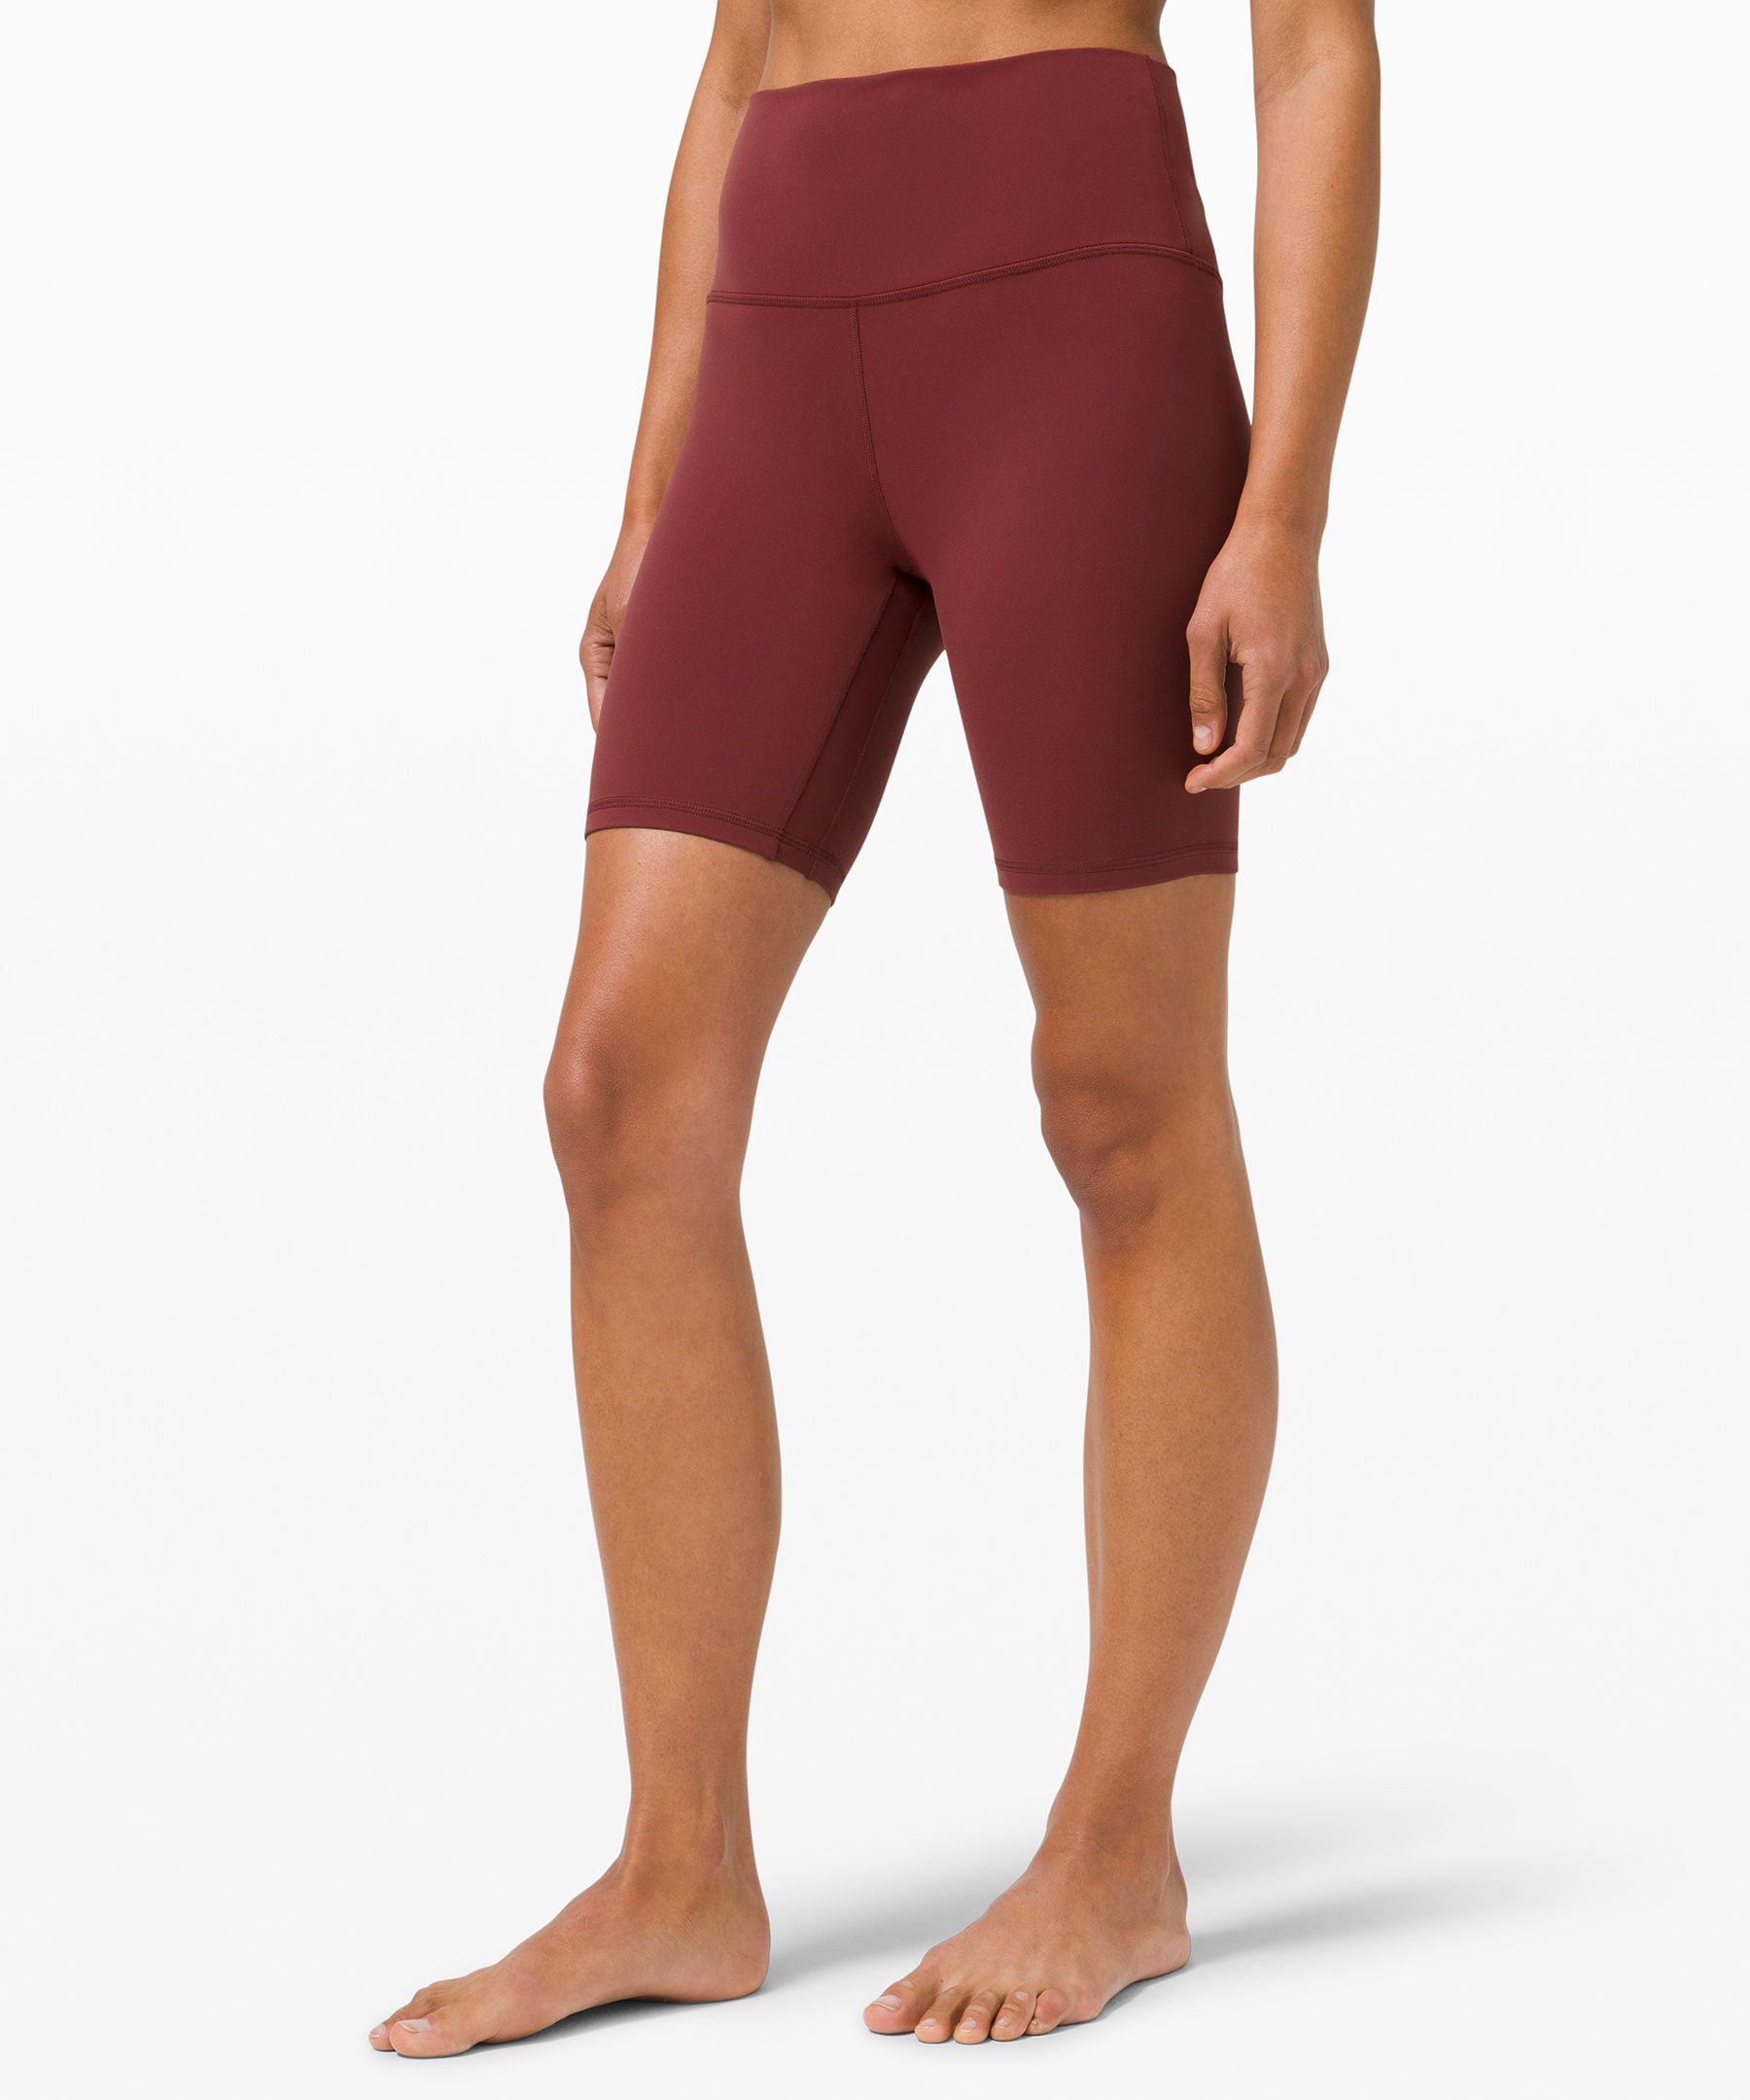 Lululemon Align™ High-rise Shorts 8" In Red Merlot